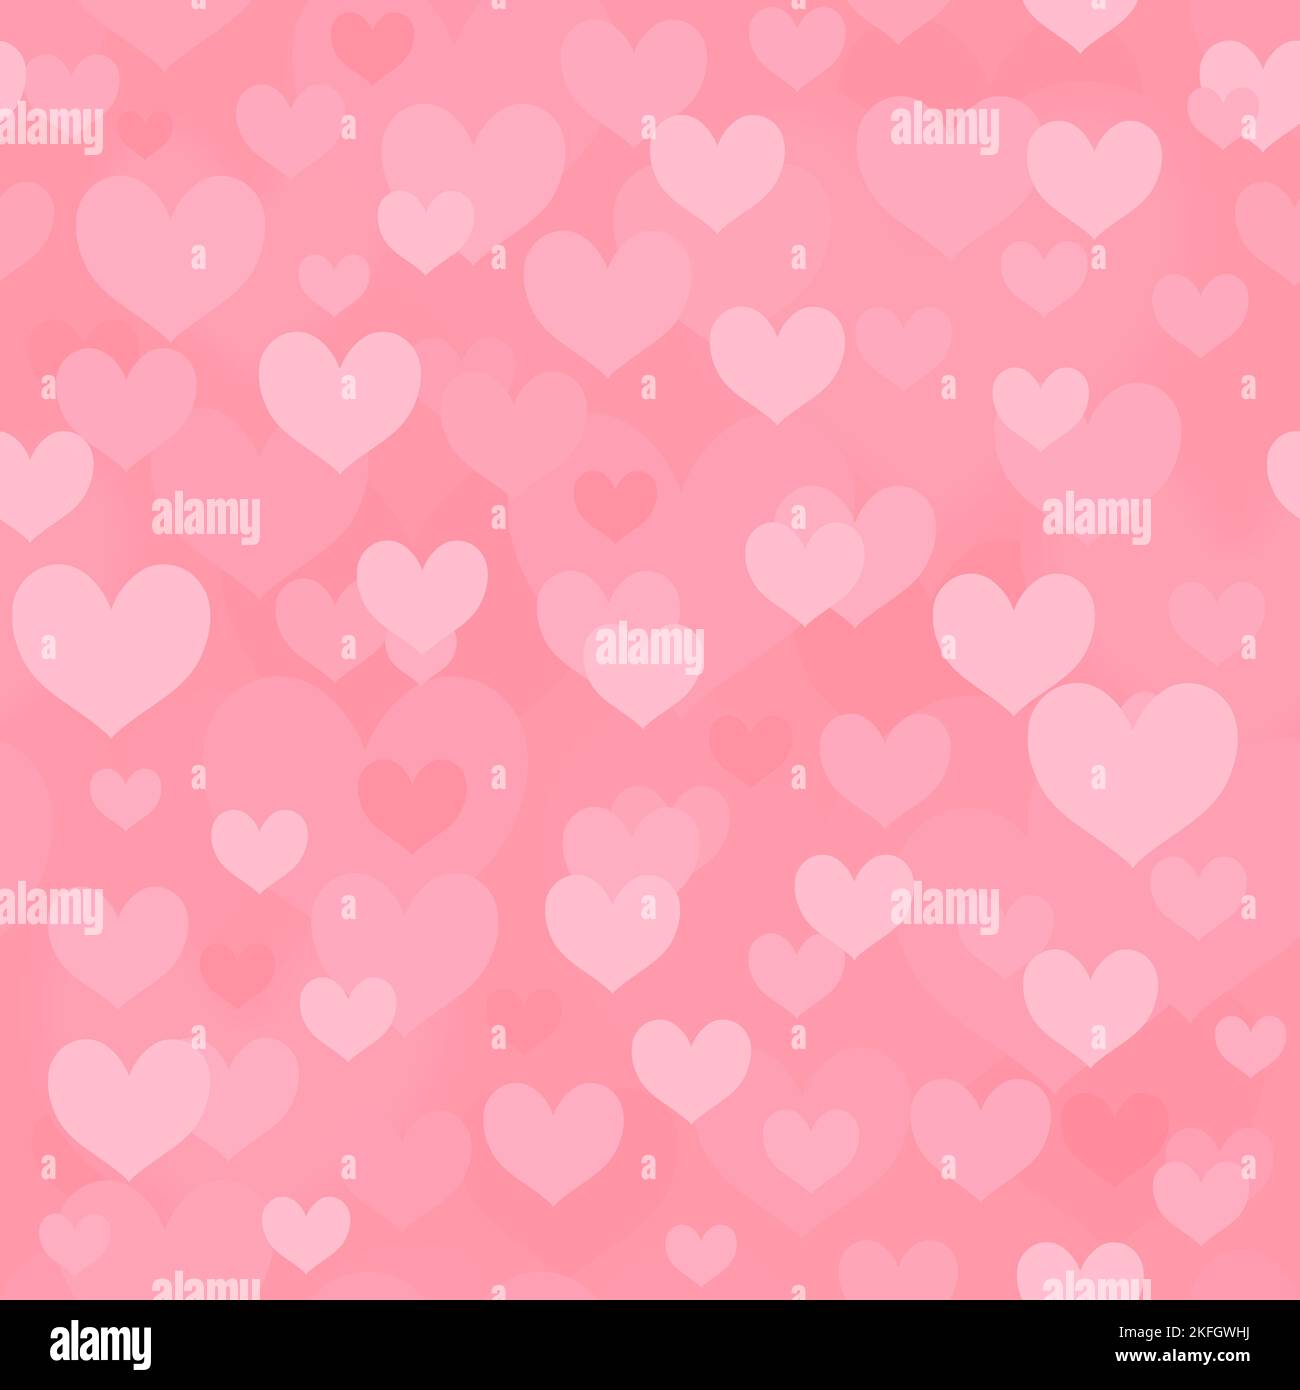 Herzmuster. Valentinstag rosa Hintergrund. Nahtlose Vektor-Herz-Textur. Stock Vektor